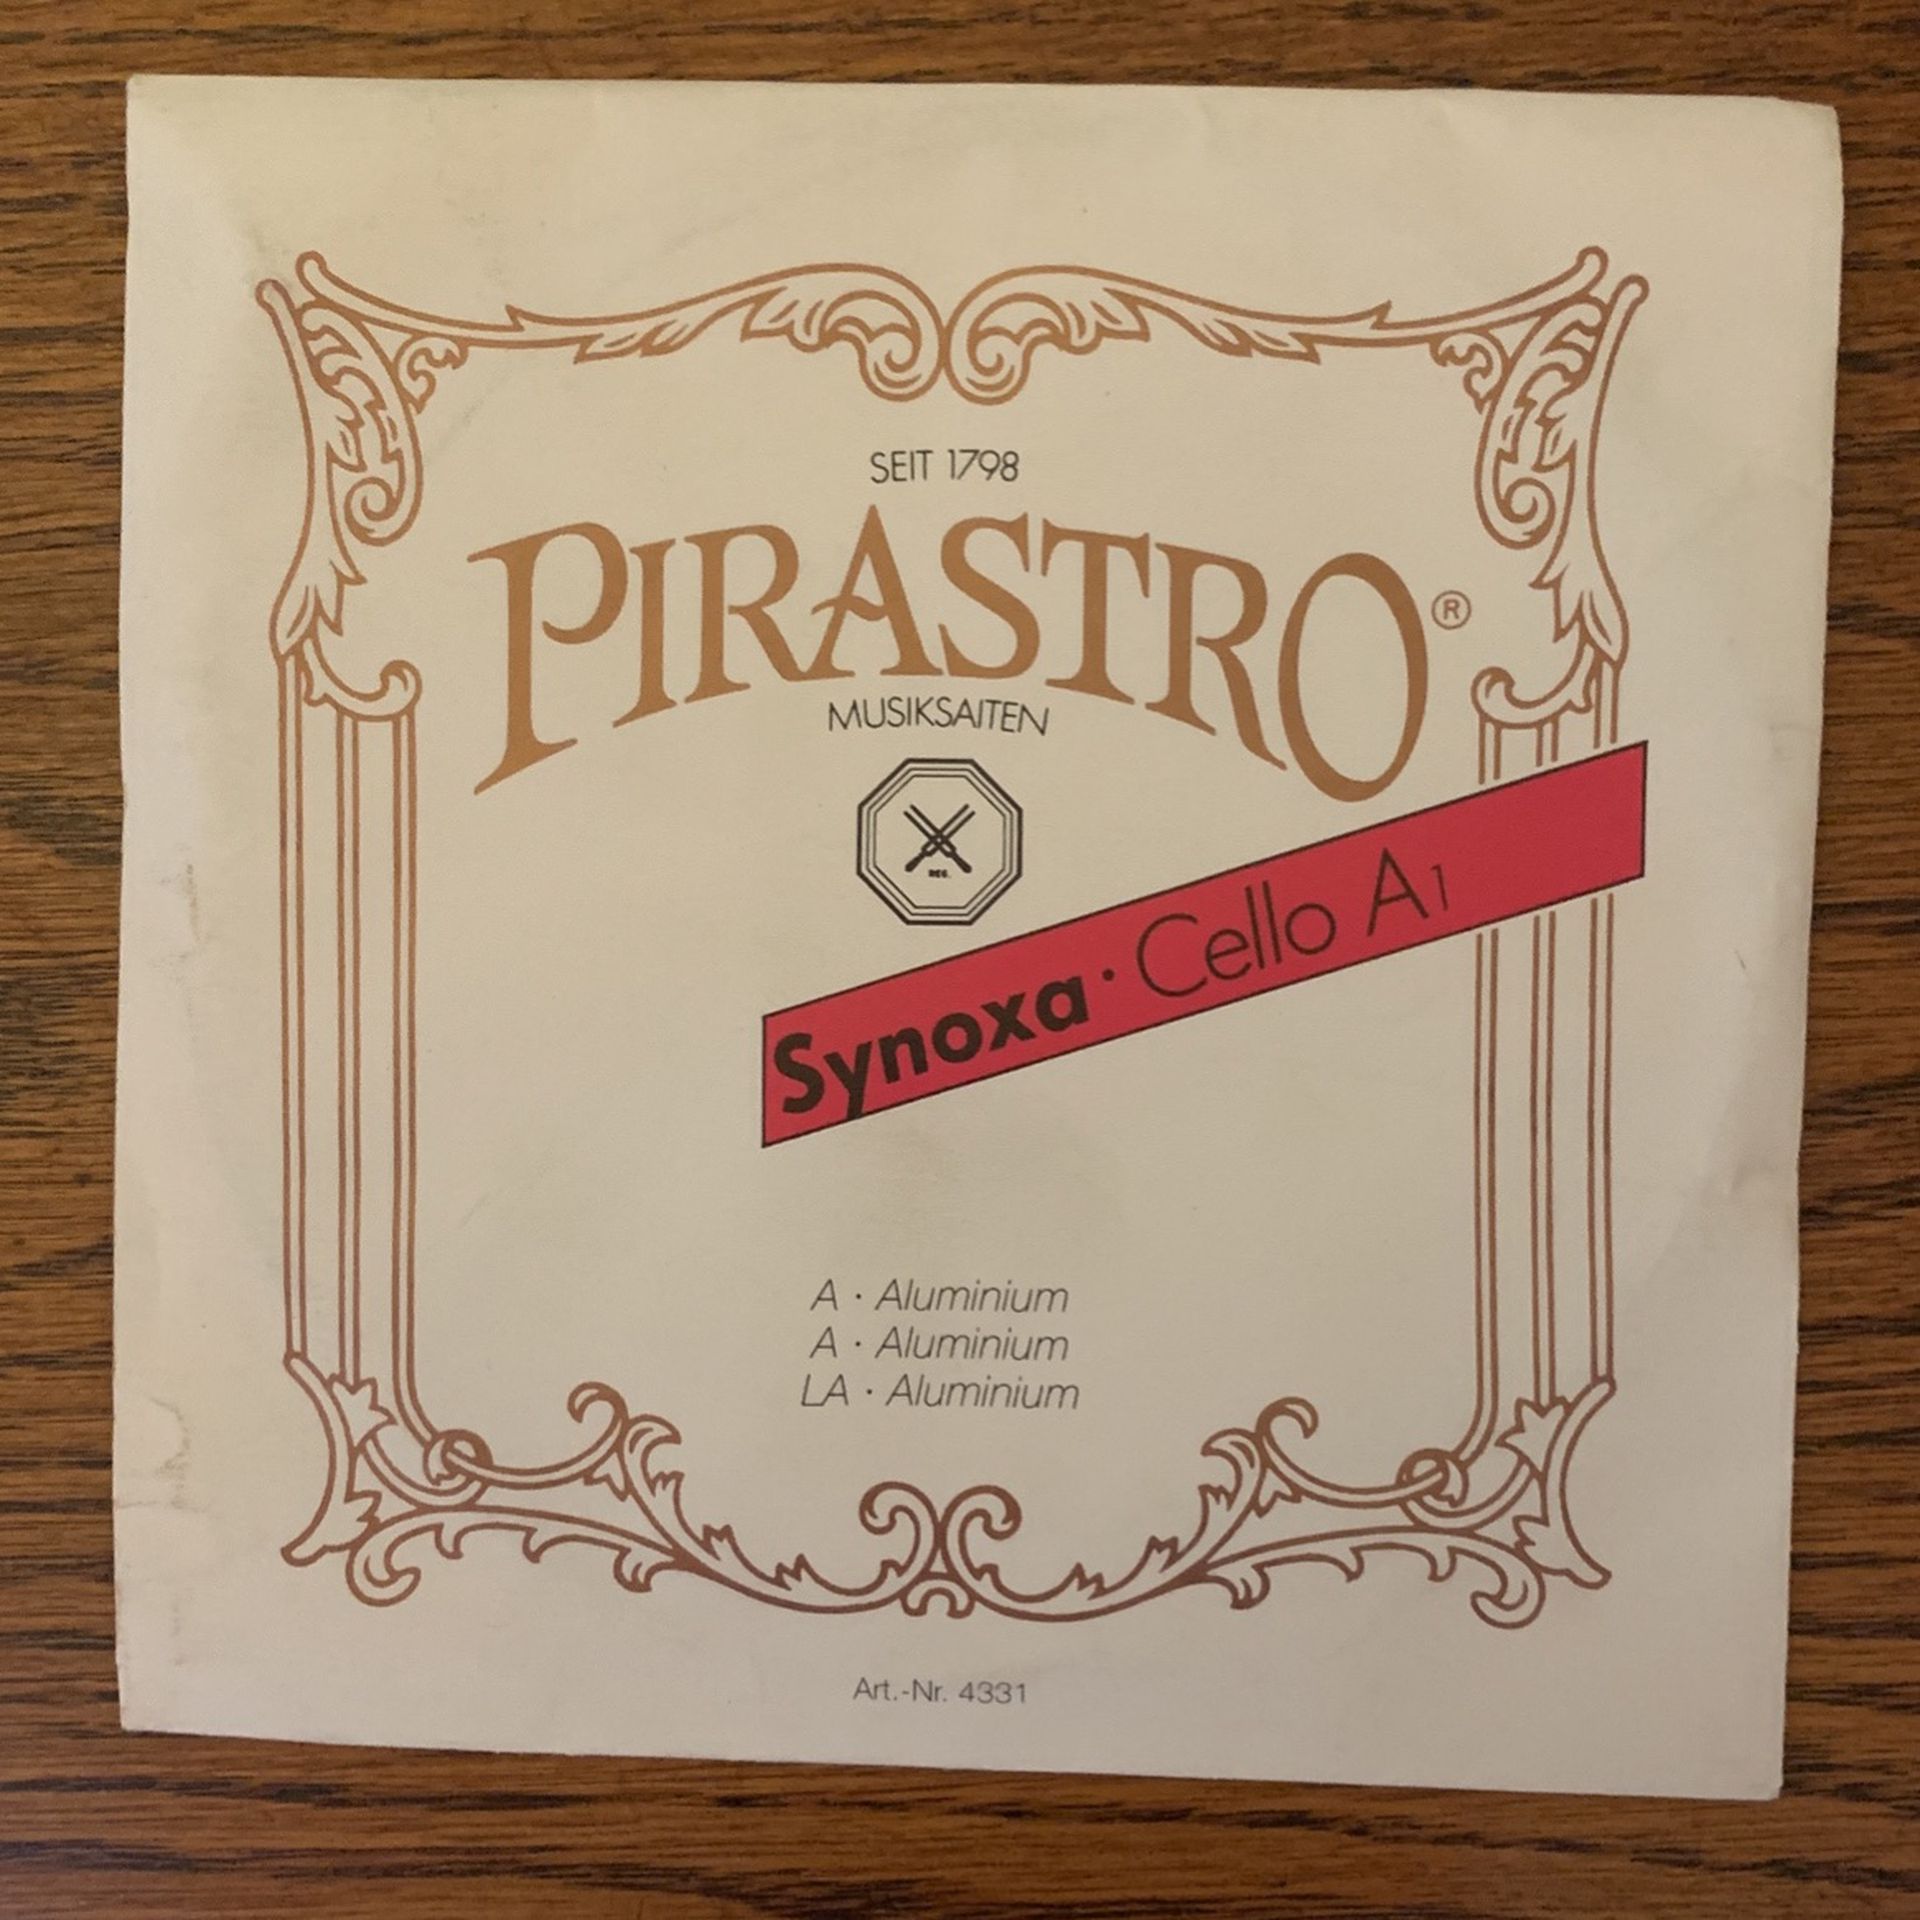 Pirastro Synoxa 4/4 Cello A String New